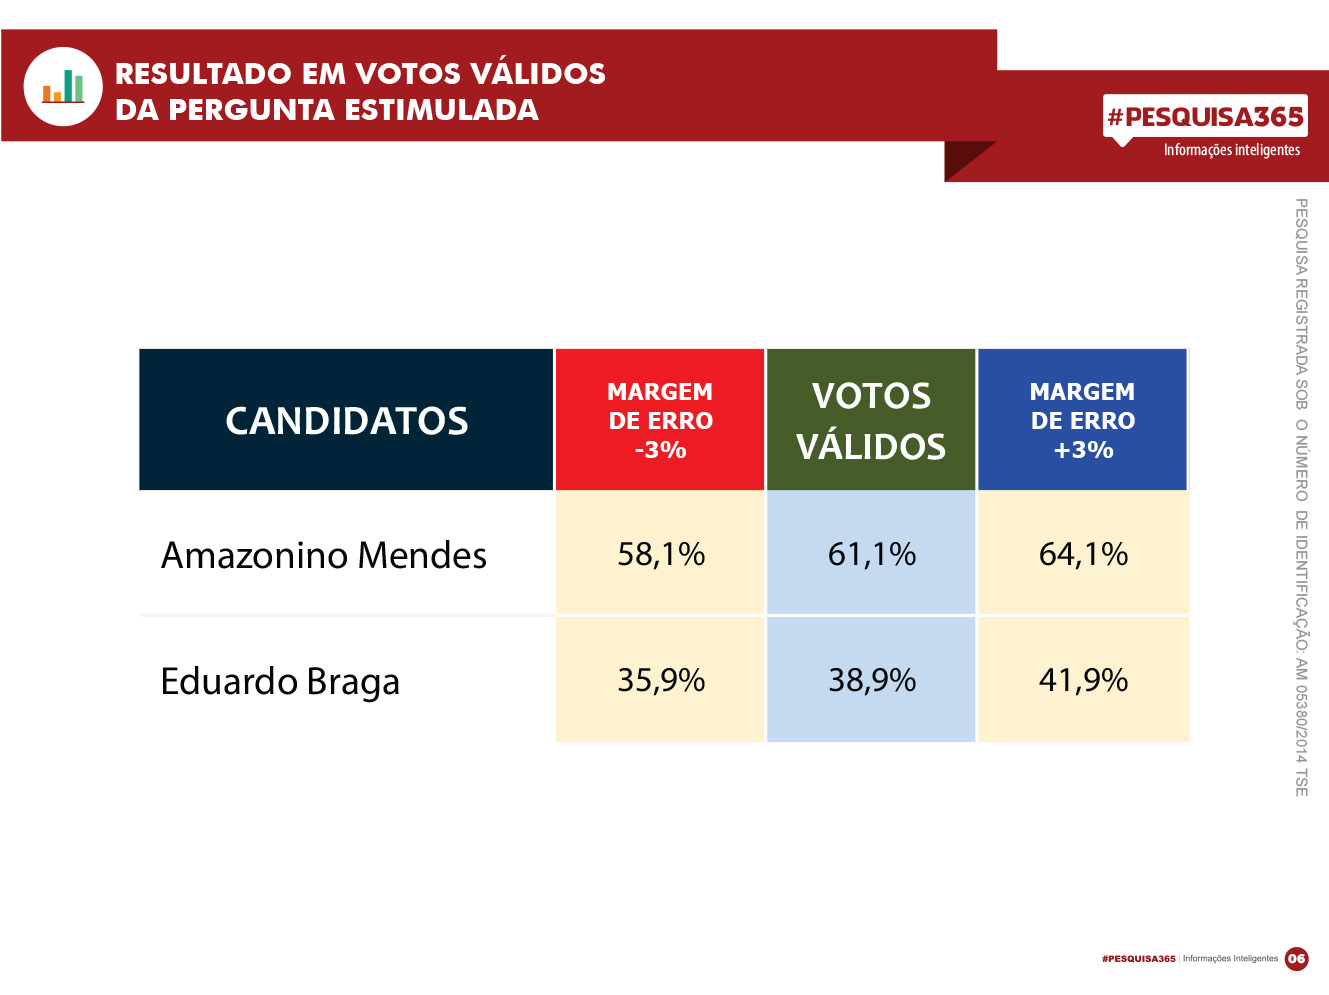 Durango Duarte - 2º turno: Amazonino segue na liderança; Eduardo perde para brancos e nulos em Manaus